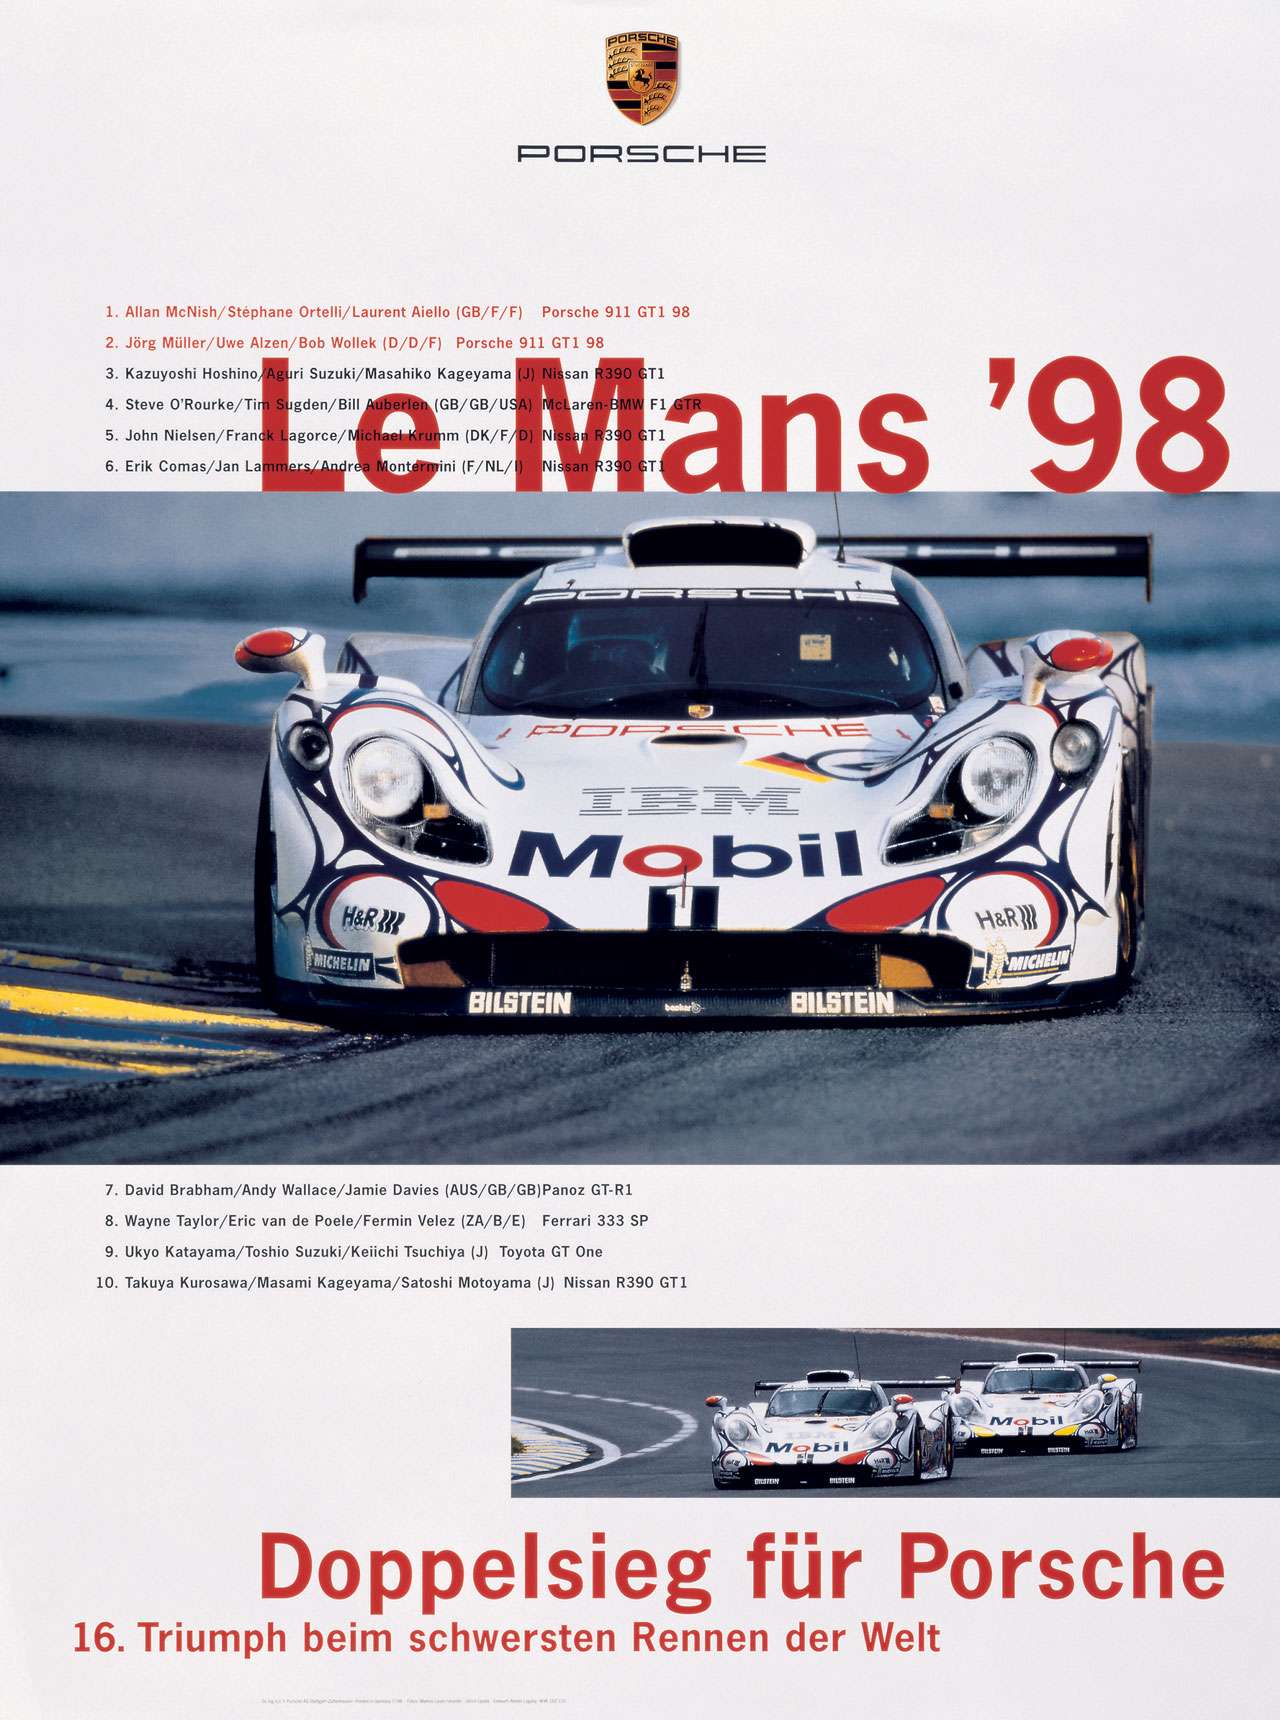 Le Mans 1998. Doppelsieg für Porsche! 16. Triumph beim schwersten Rennen der Welt!